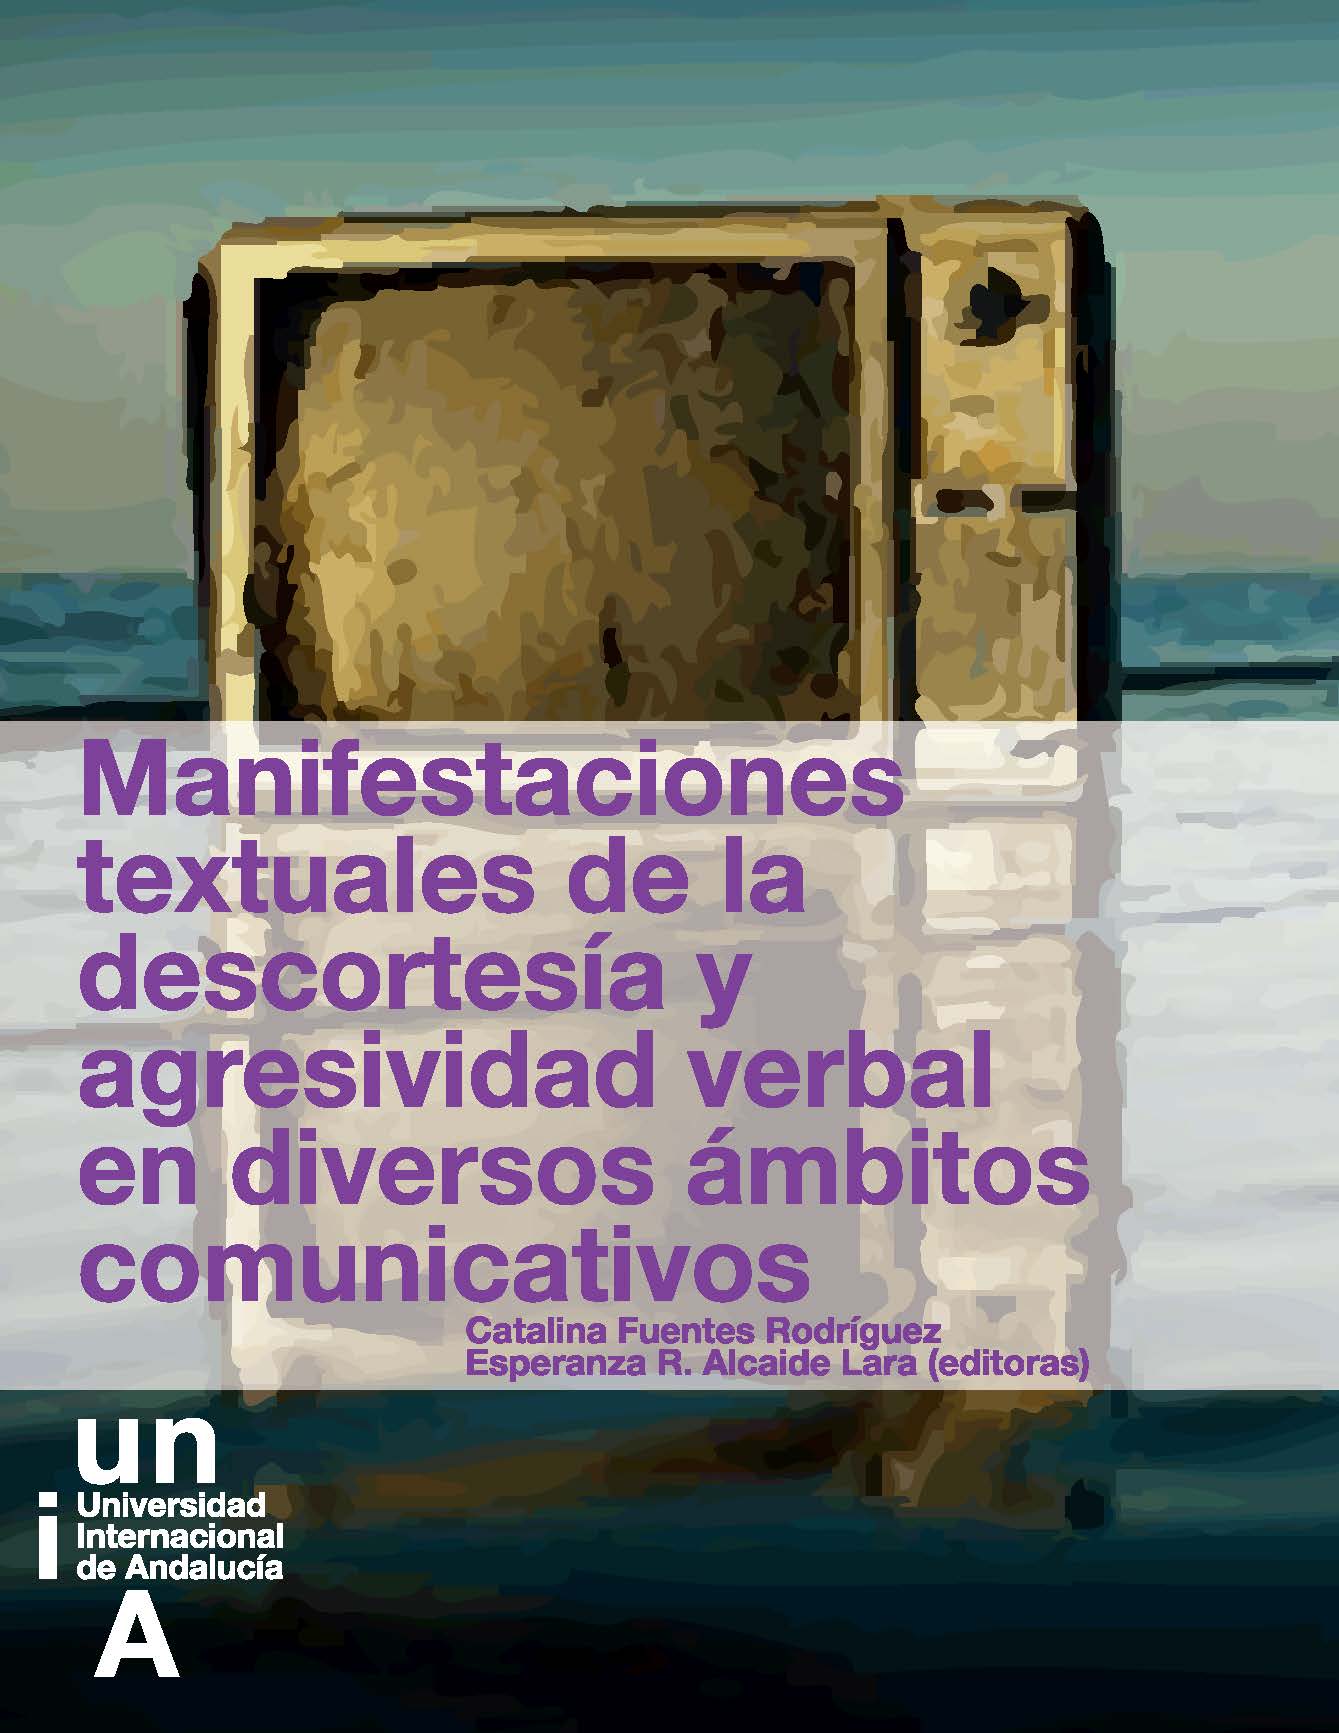 Imagen de portada del libro Manifestaciones textuales de la descortesía y agresividad verbal en diversos ámbitos comunicativos